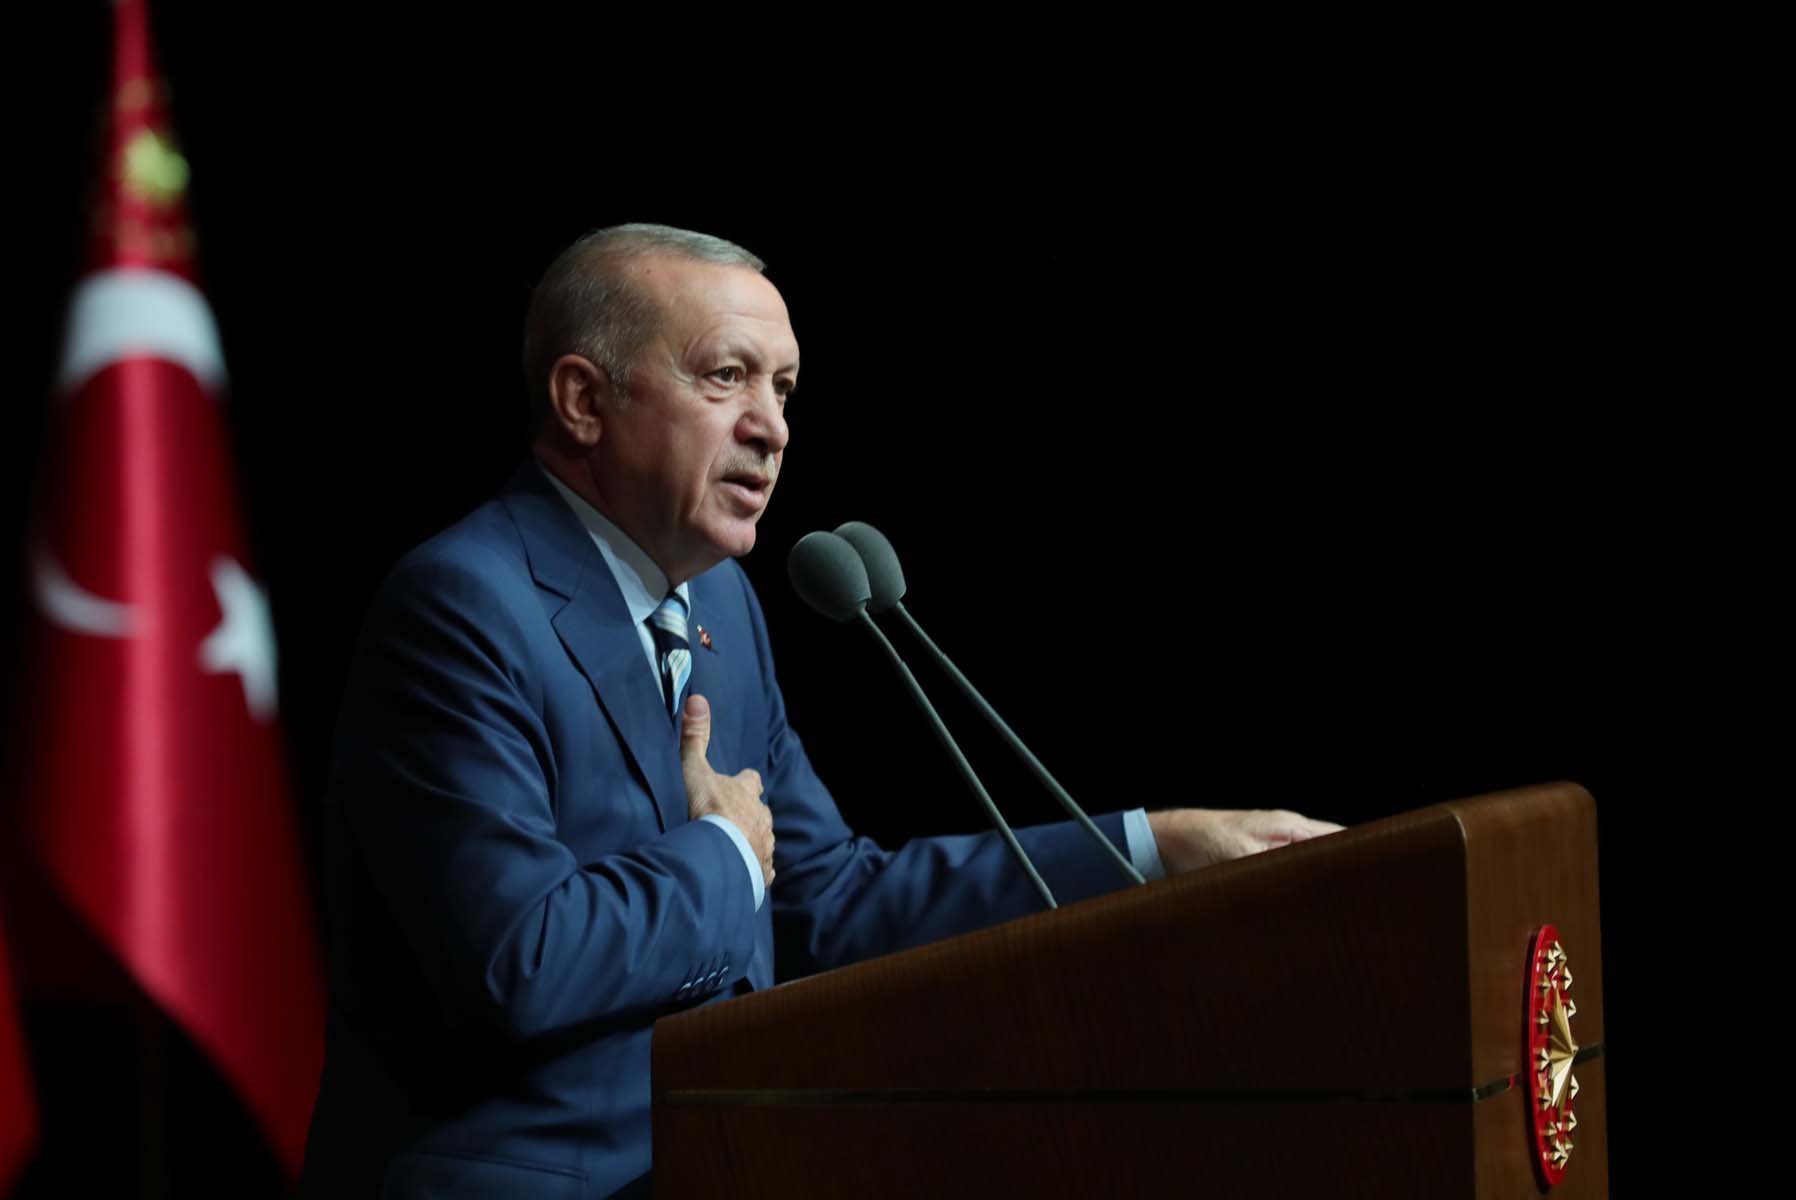 Son dakika! Selahattin Demirtaş haddini aştı! Cumhurbaşkanı Erdoğan'a çirkin sözler sarf etti: Kendi vereceğin hesabı düşün